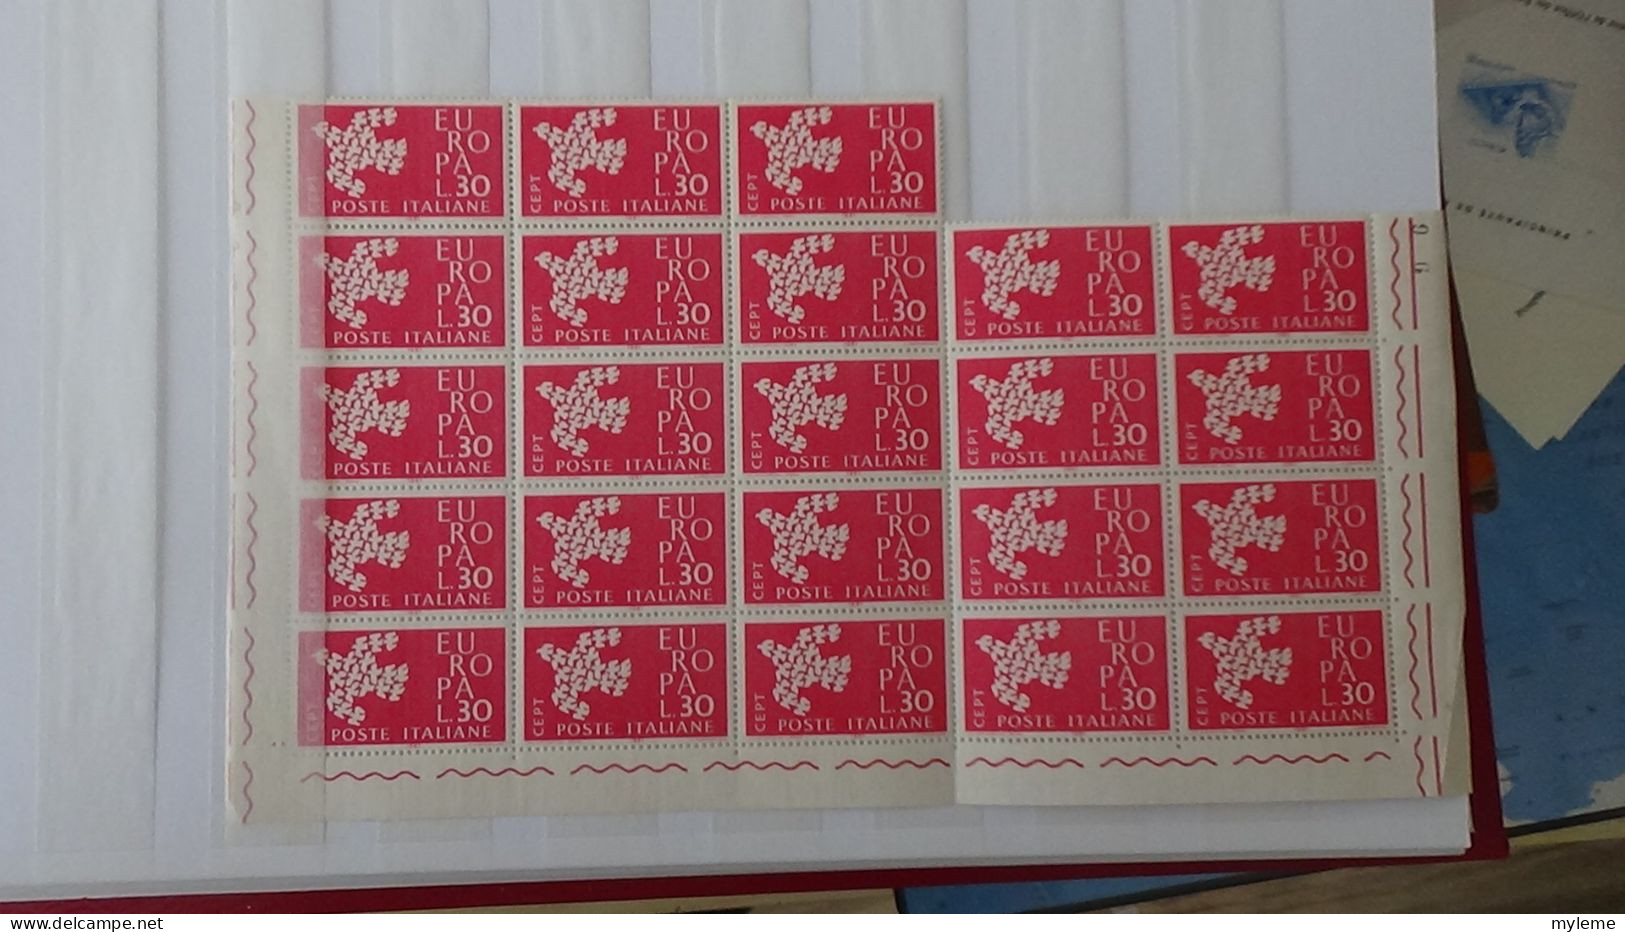 BF6 Bel ensemble de timbres et blocs ** de divers pays dont URUGUAY (voir commentaires)  A saisir !!!